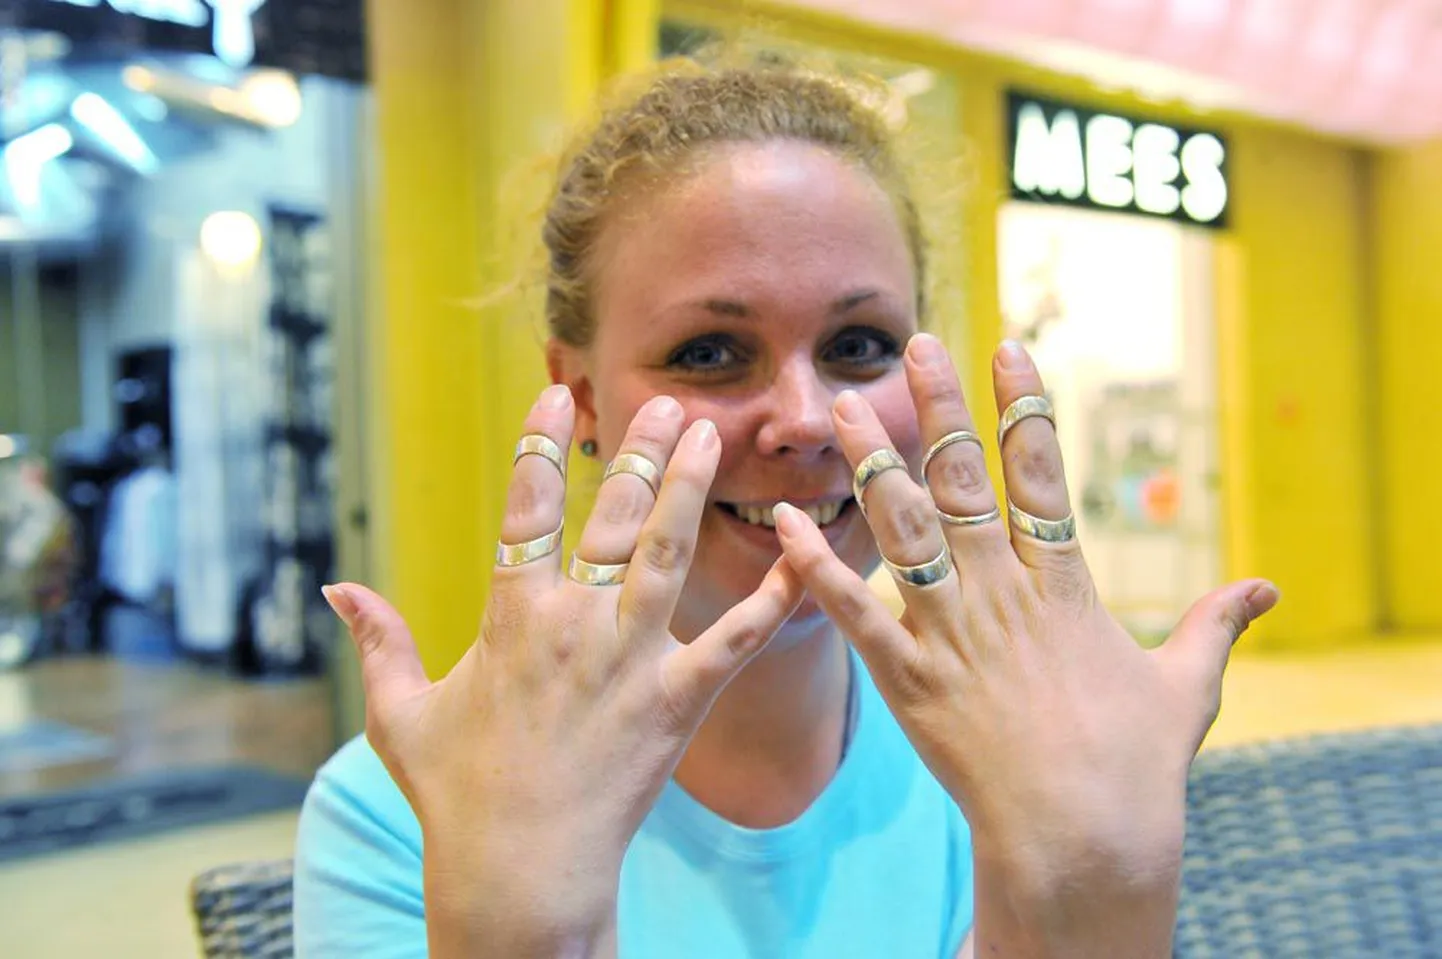 Rootslanna Anna Ageberg näitas Eesti Noorte Reumaliidu korraldatud teabepäeval oma erilisi sõrmuseid ehk sõrmelahaseid, mis aitavad tal haigeid sõrmeliigeseid toetada.